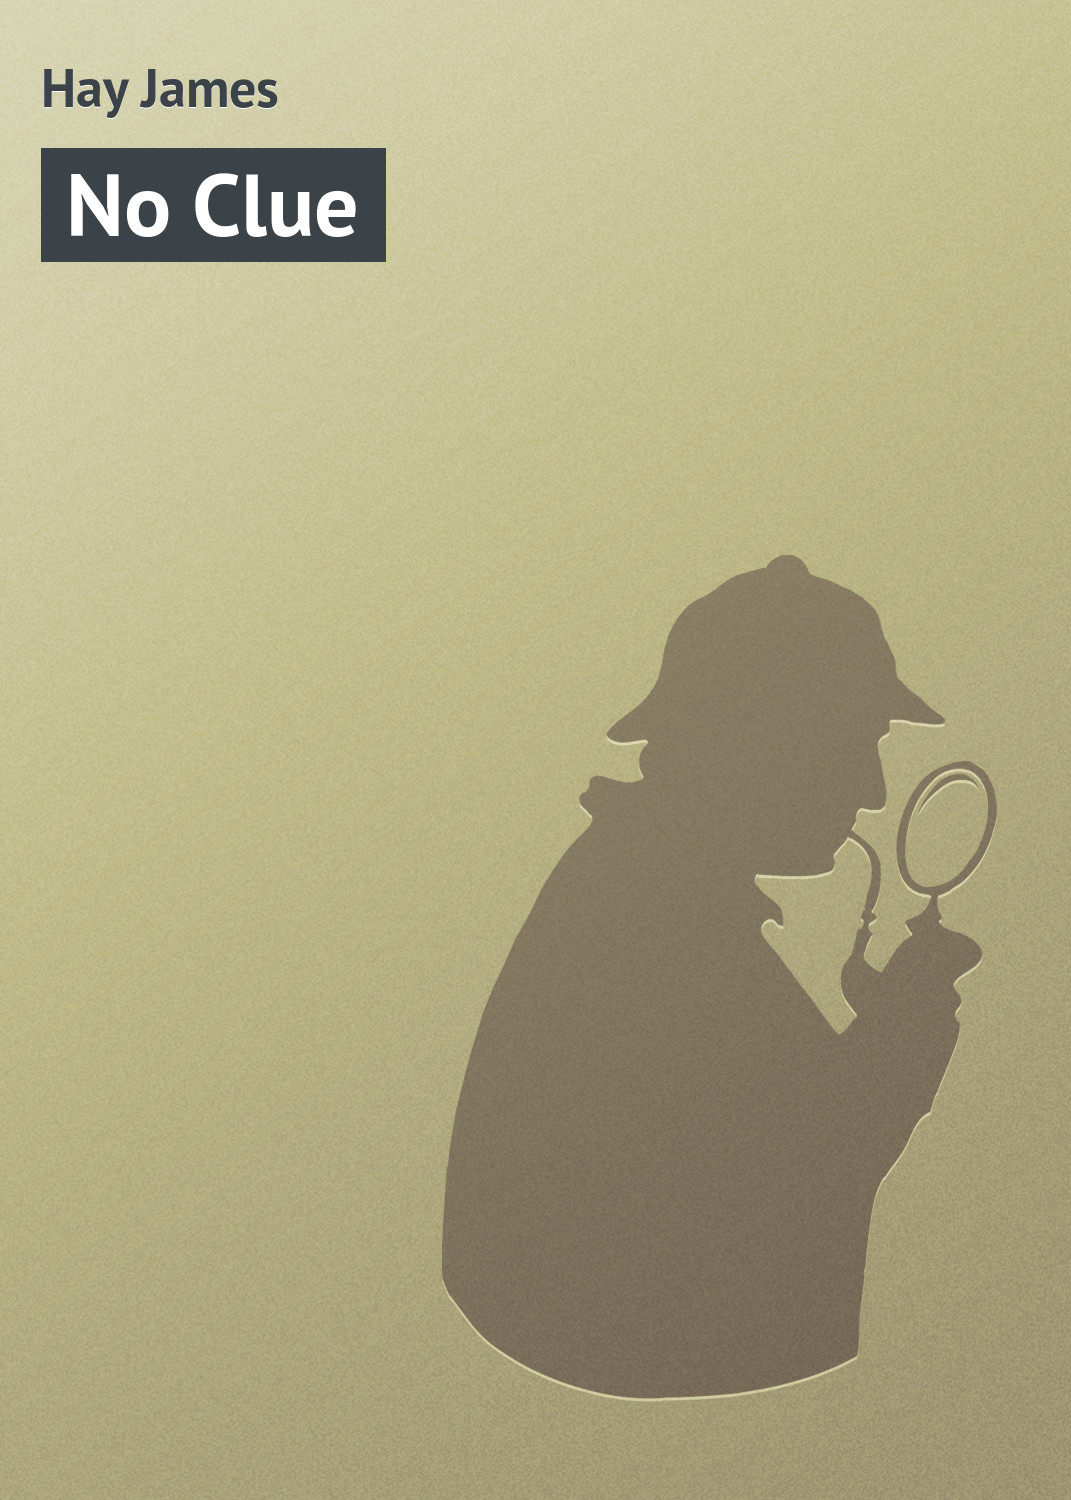 Книга No Clue из серии , созданная James Hay, может относится к жанру Классические детективы, Зарубежные детективы, Зарубежная классика, Иностранные языки. Стоимость электронной книги No Clue с идентификатором 23159651 составляет 5.99 руб.